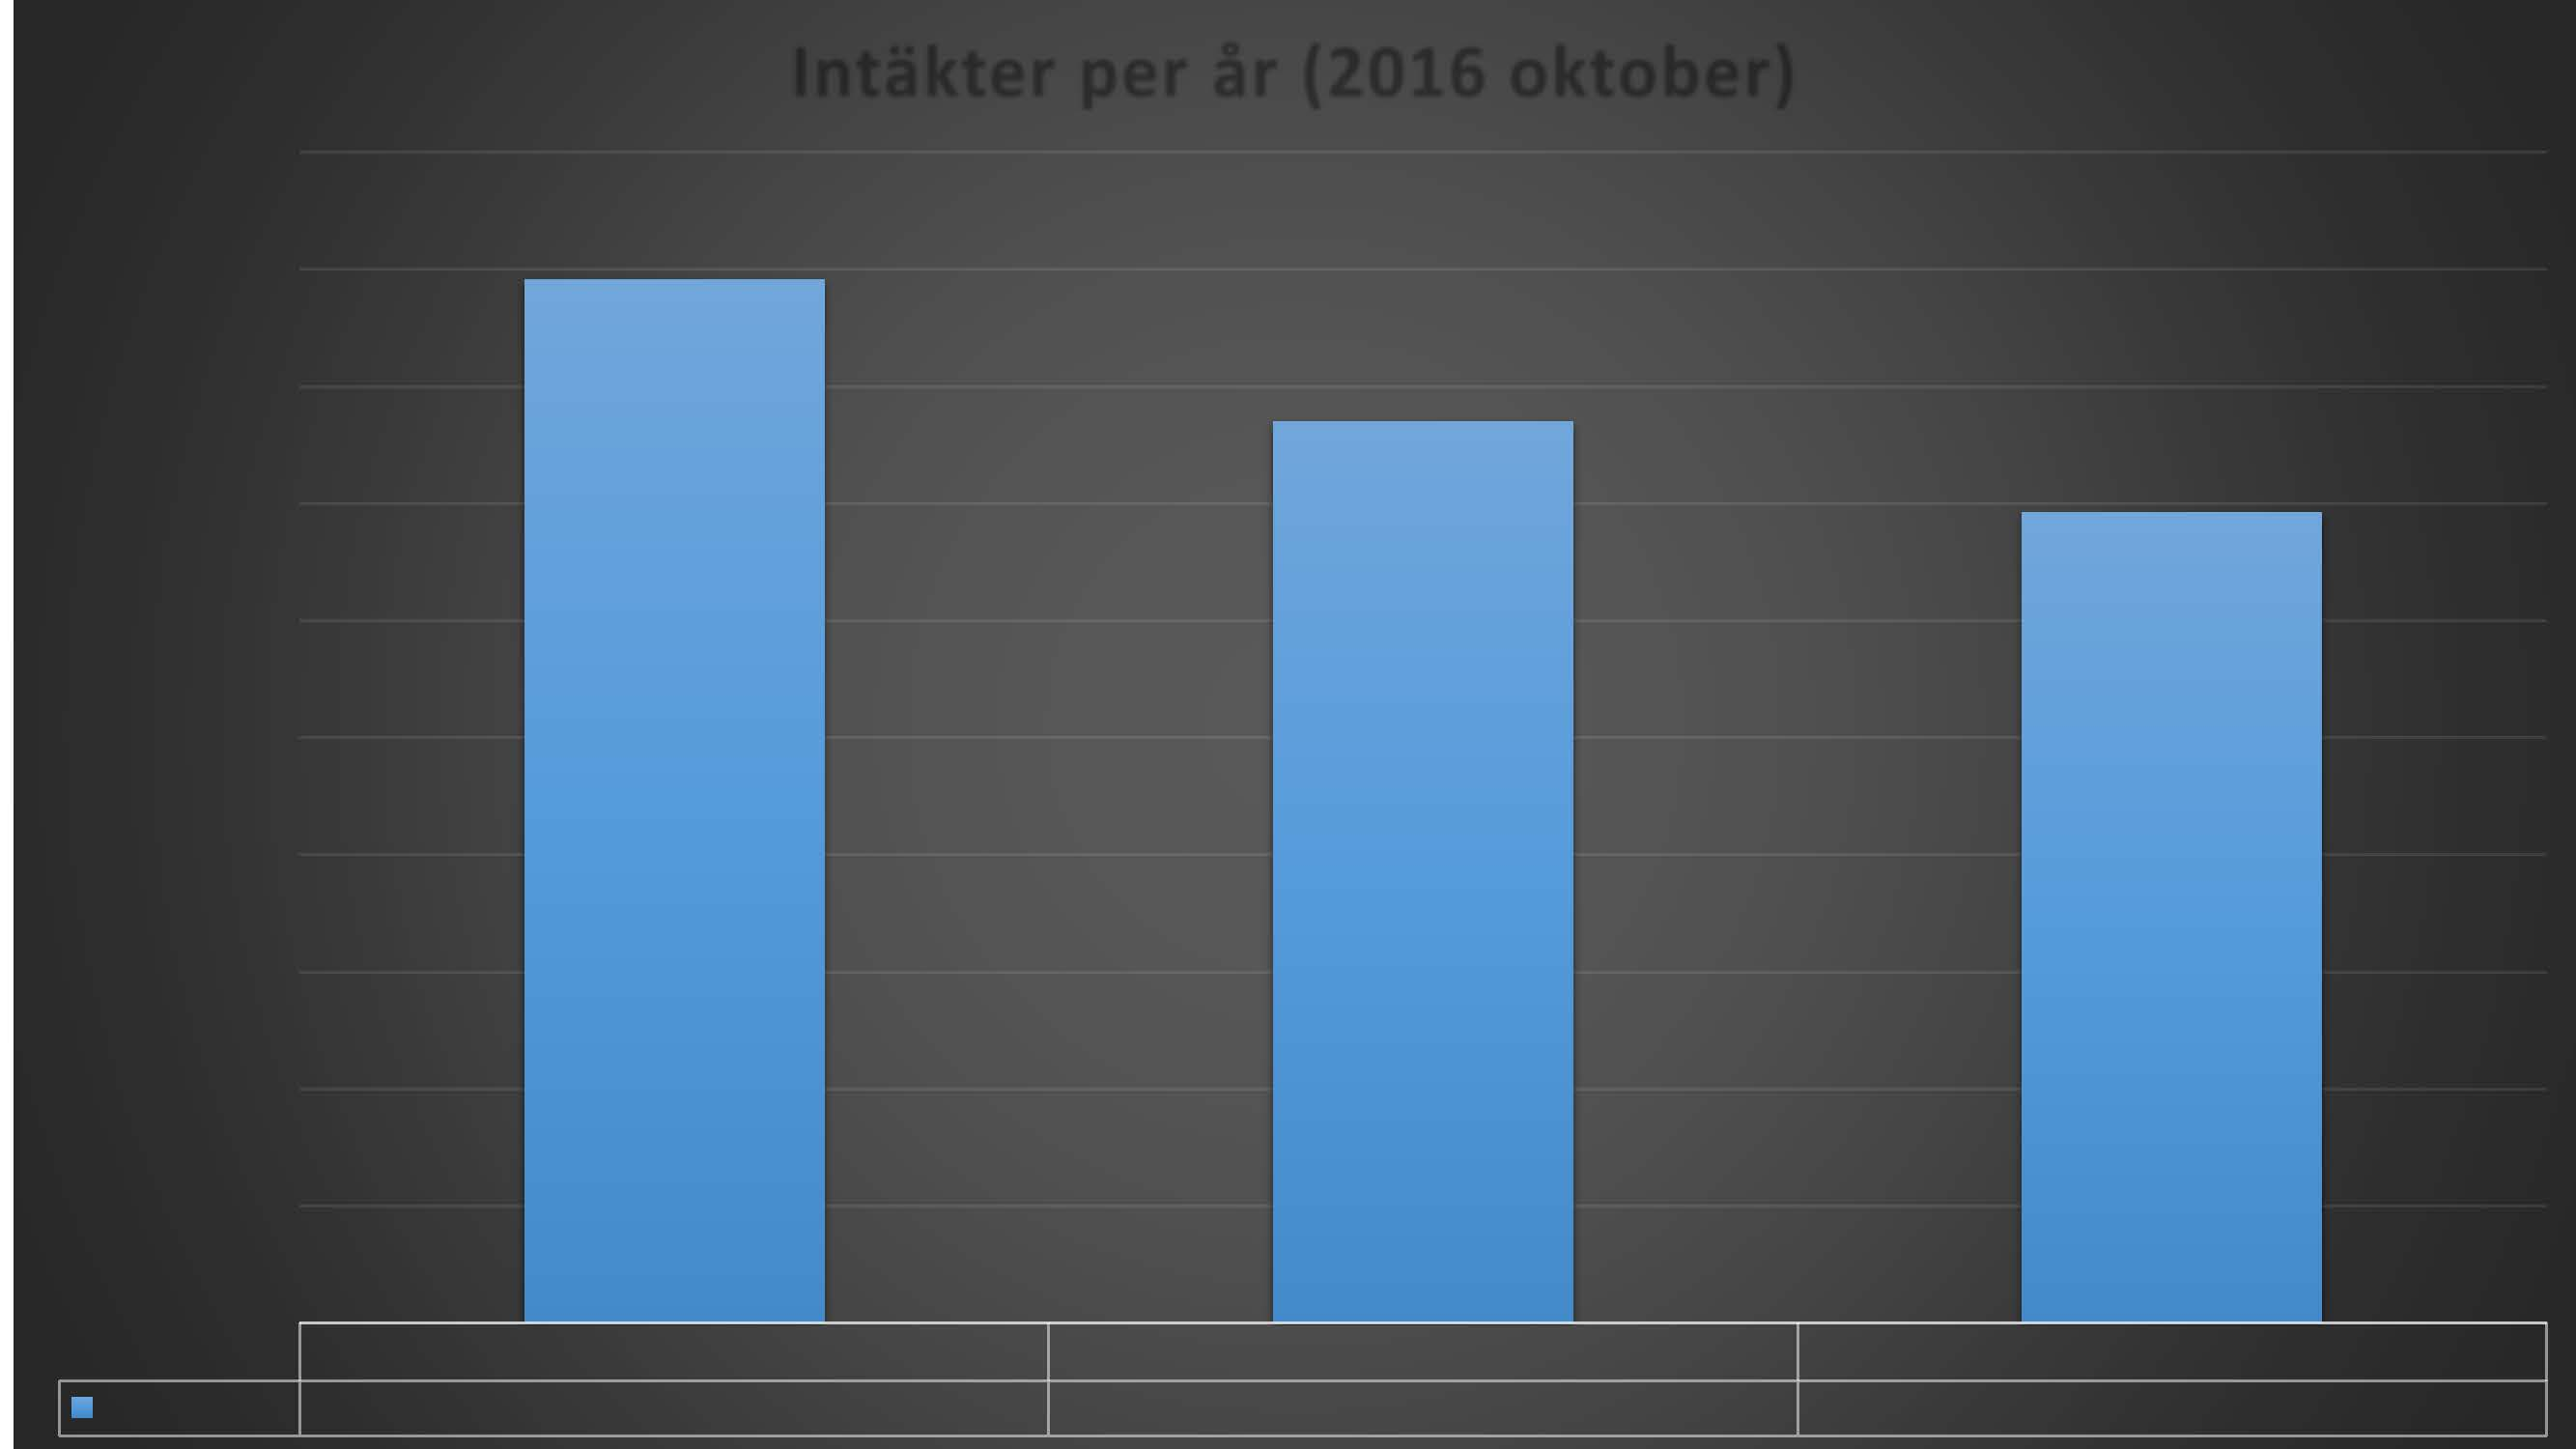 Itäkter per år (2016 oktober) 1000 900 800 700 BELOPP I TKR 600